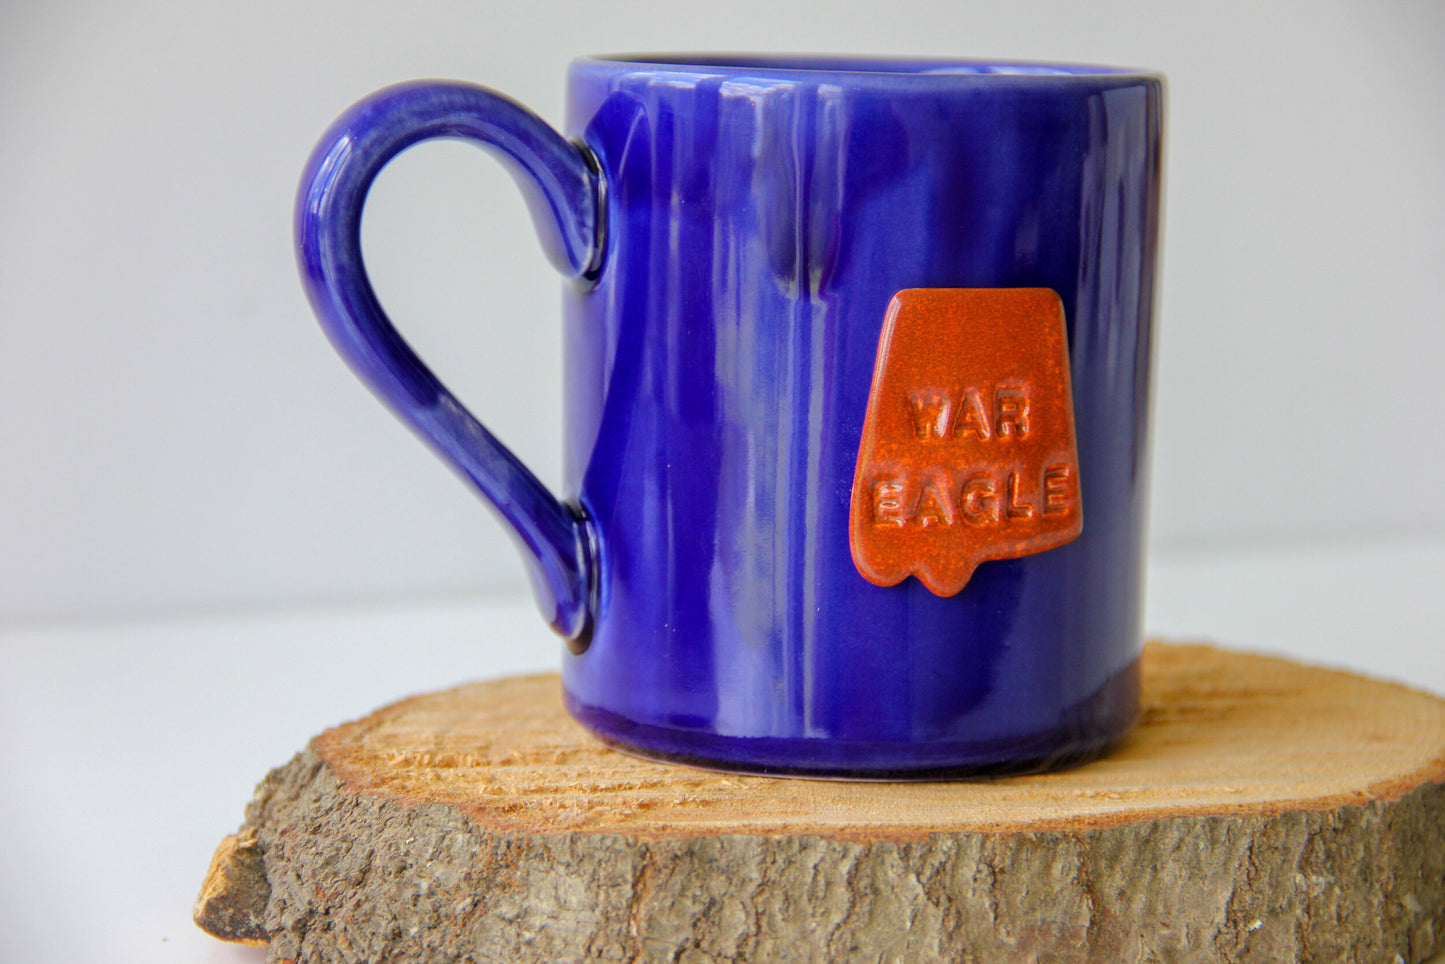 War Eagle Mug